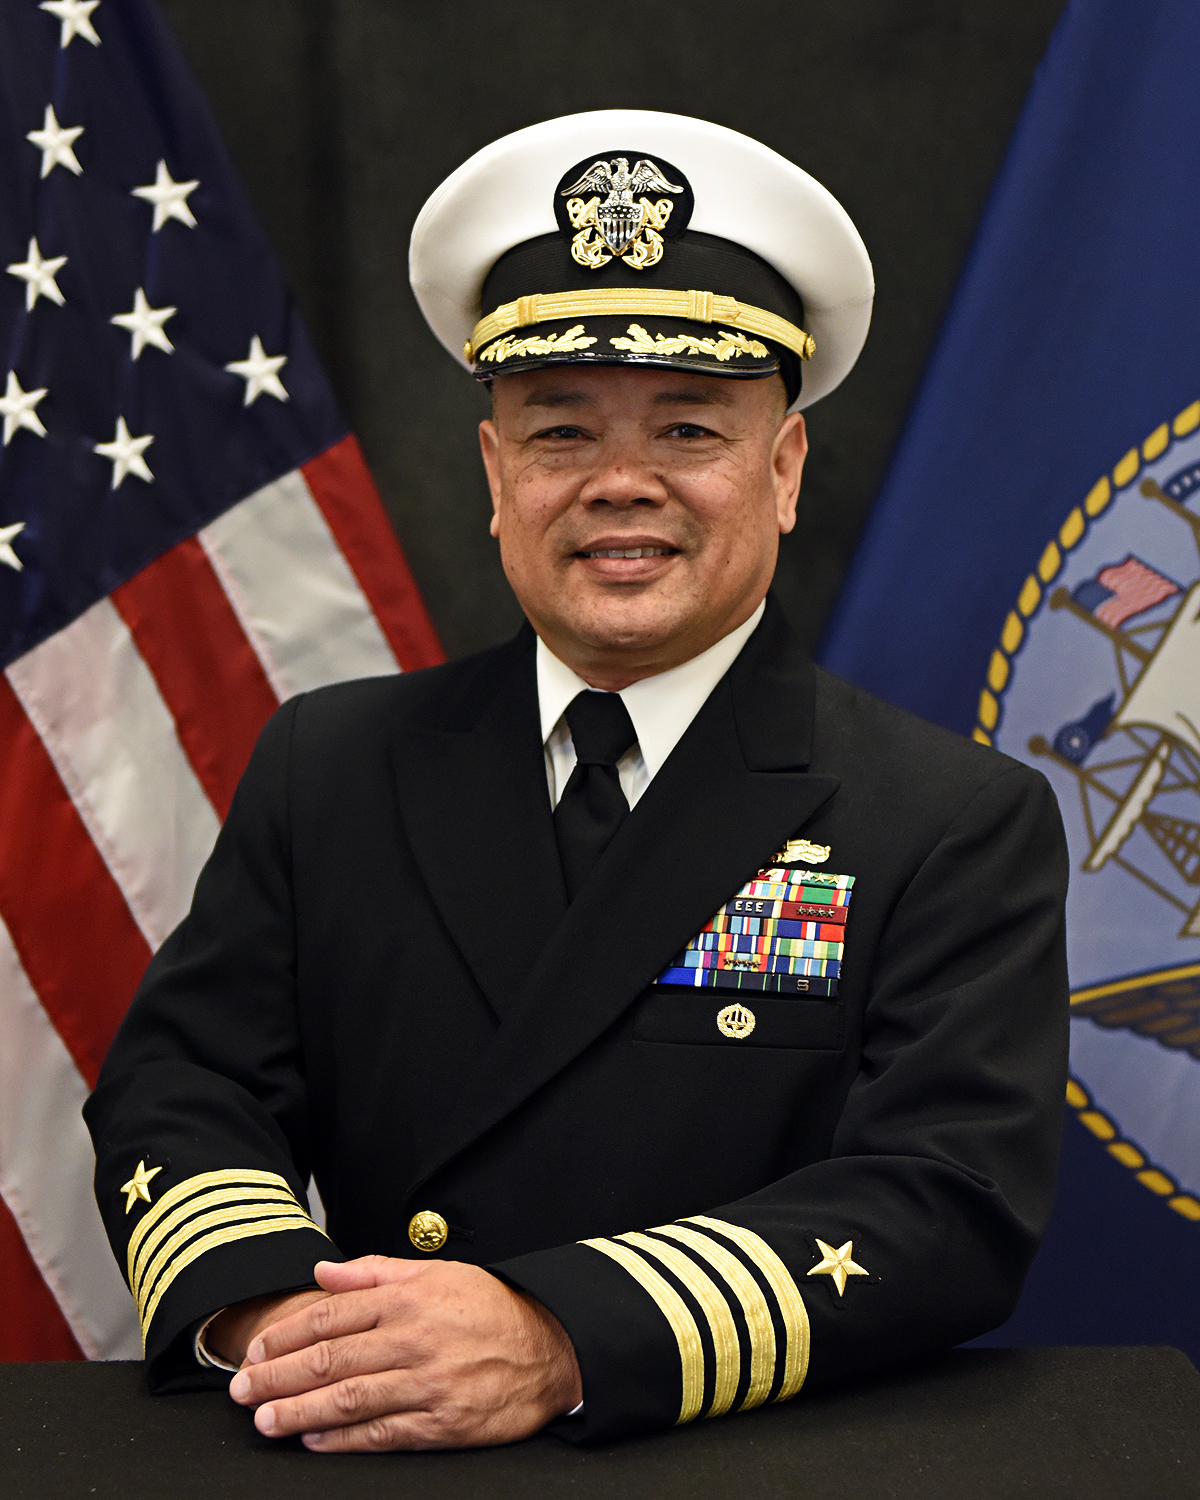 Captain R. Enriquez